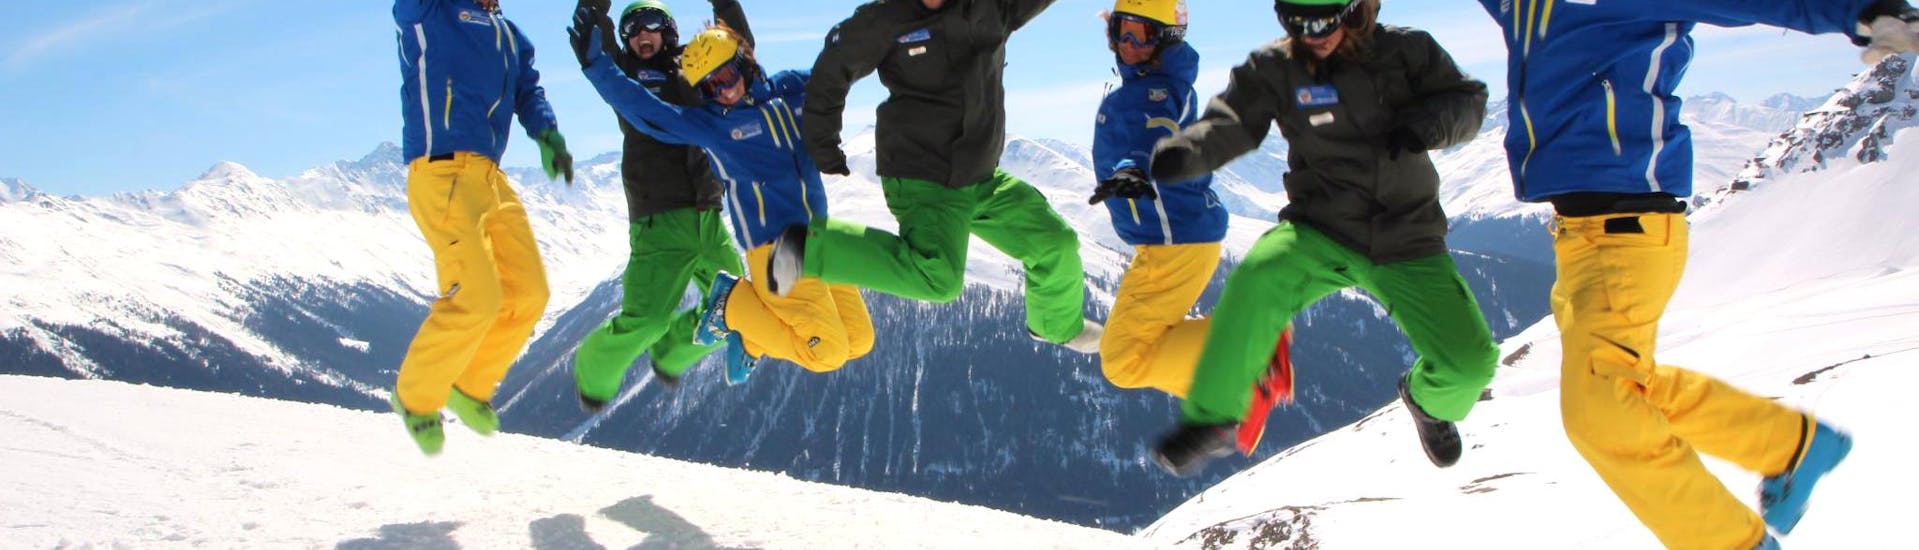 Kinder-Skikurs (14-17 J.) für Fortgeschrittene mit Schweizer Skischule Davos - Hero image